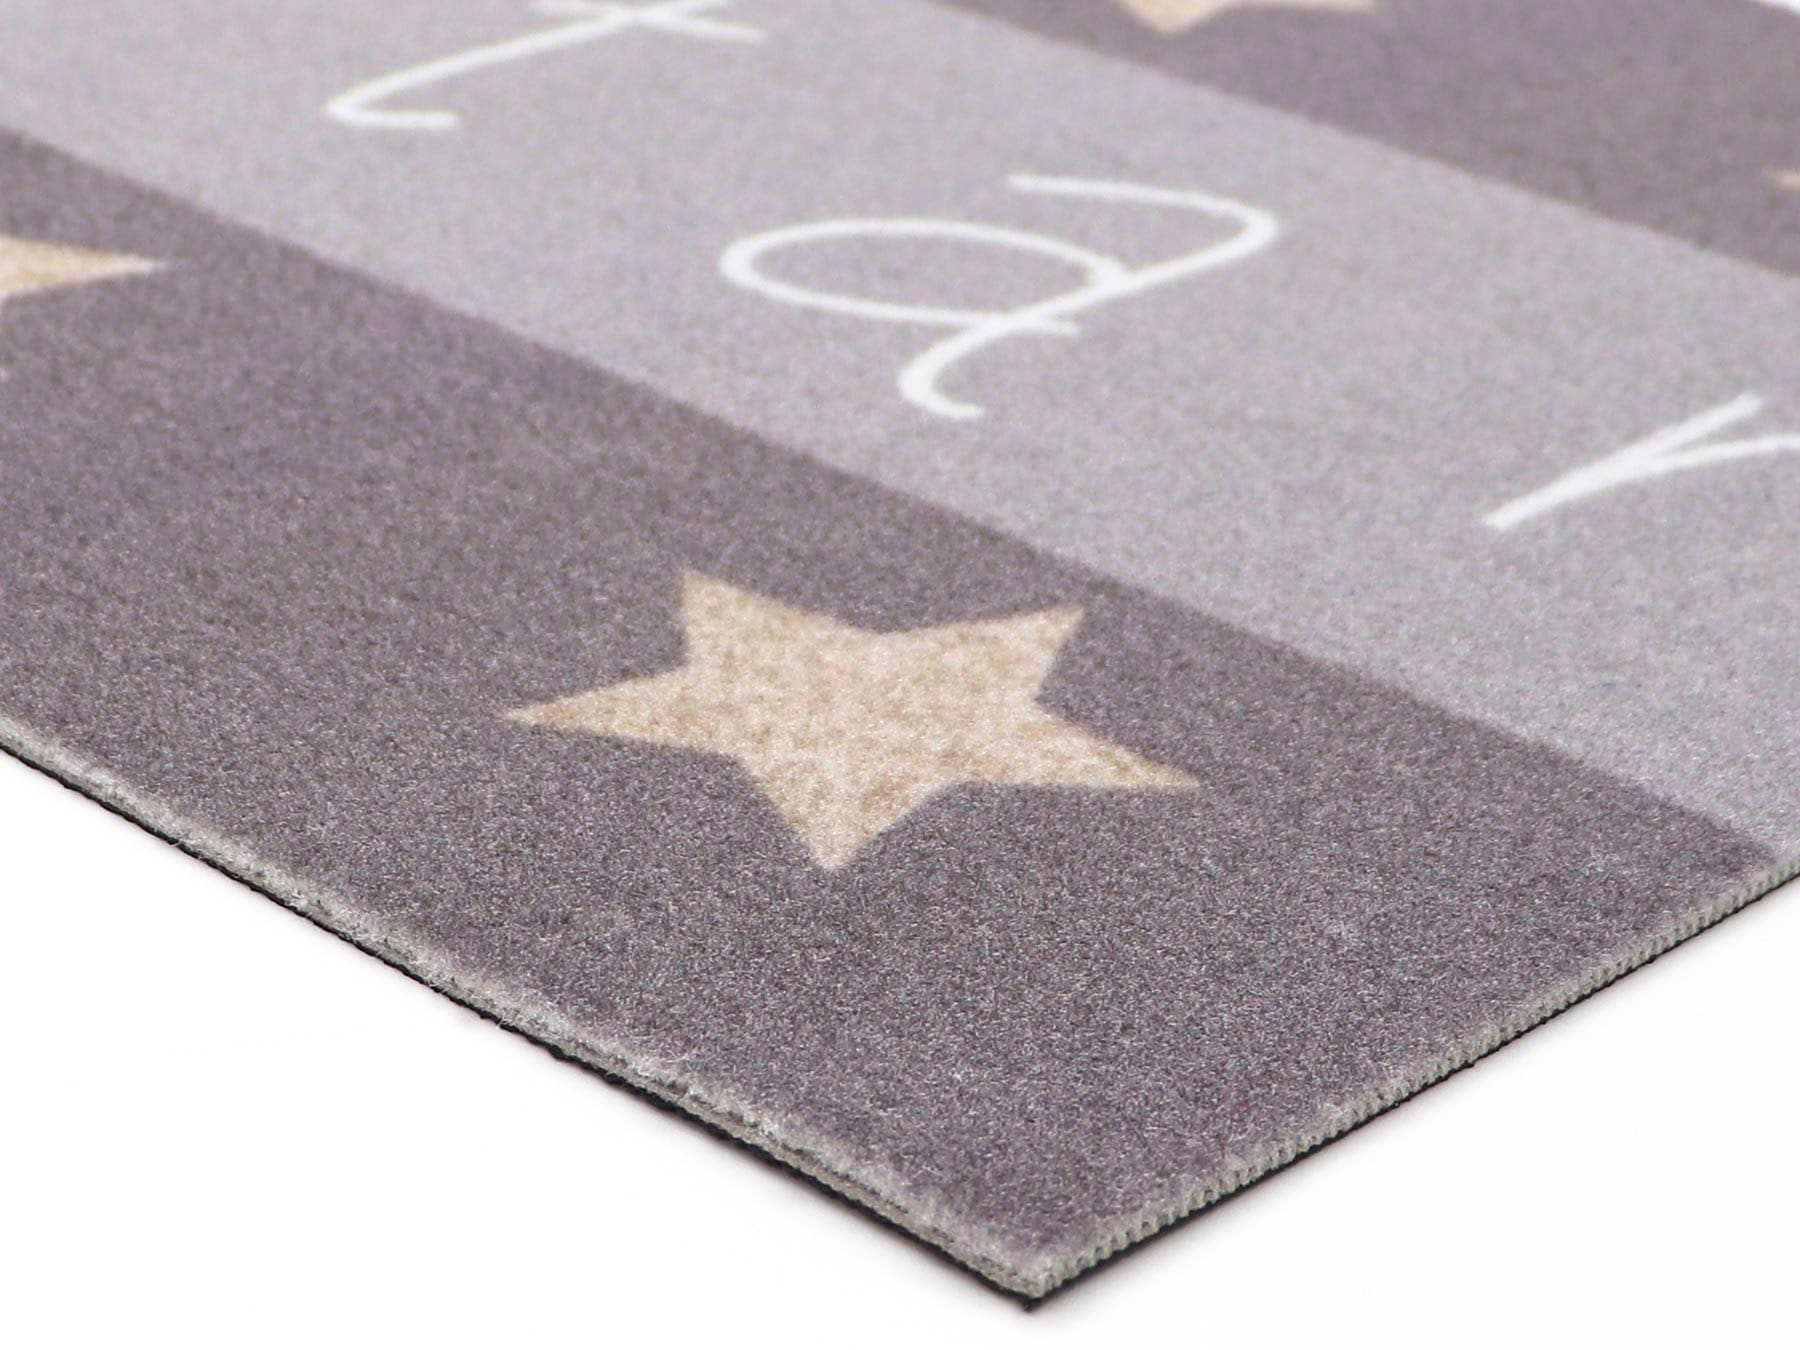 Primaflor-Ideen in Textil Küchenläufer »KITCHEN STAR«, rechteckig, mit  Schriftzug & Motiv Sterne, rutschhemmend, waschbar, Küche auf Rechnung  bestellen